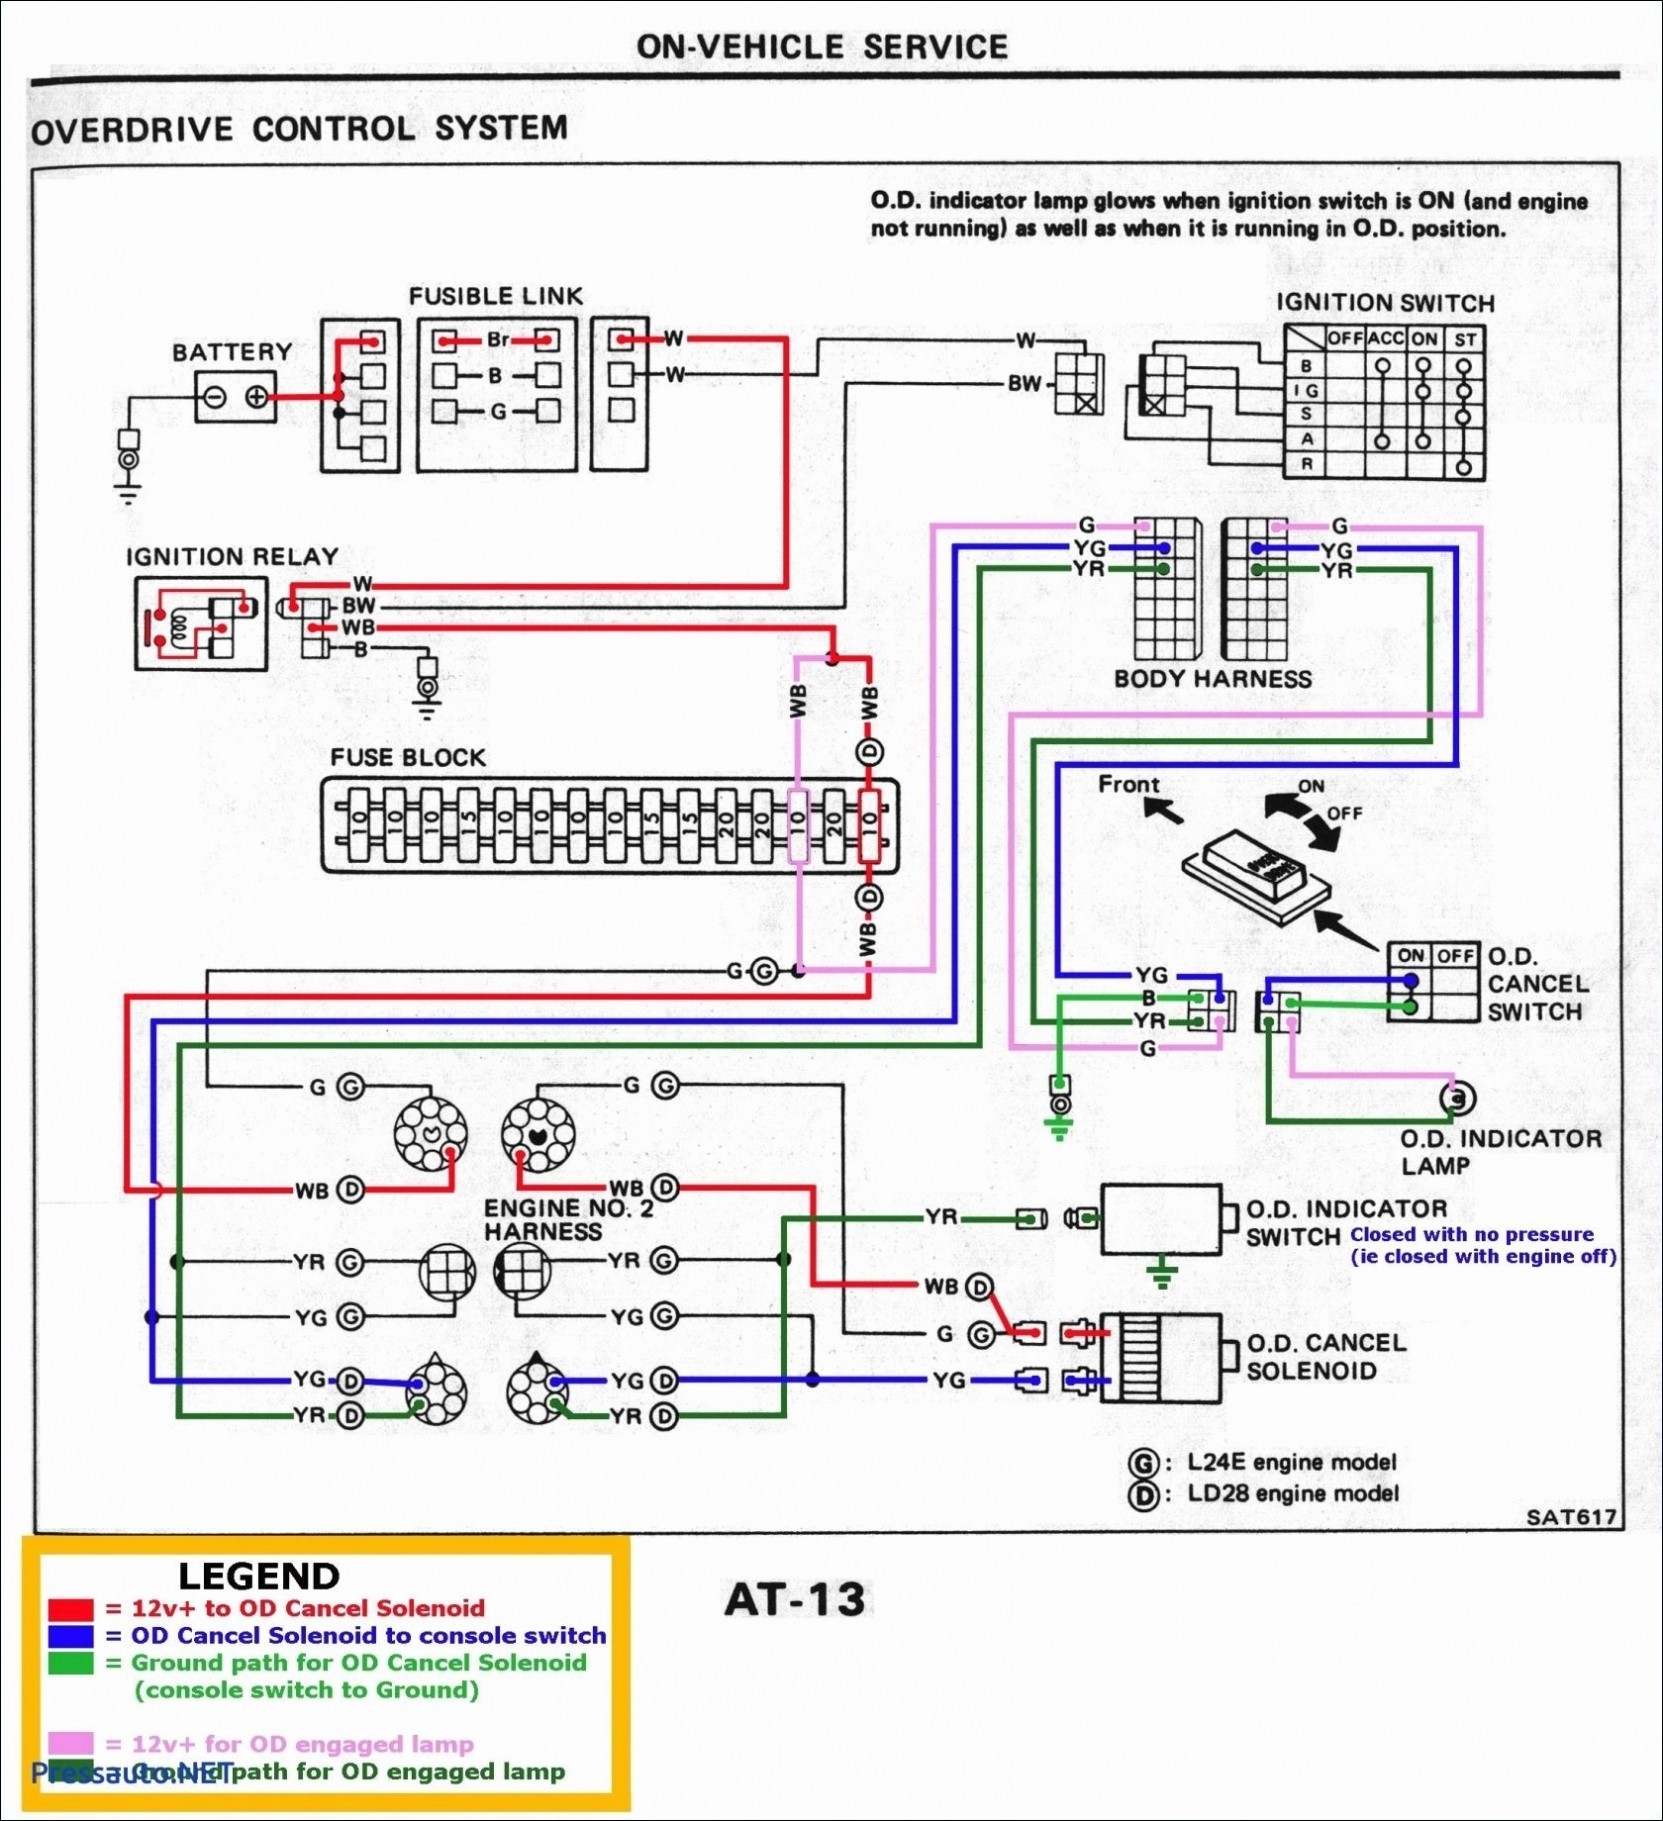 Fan Speed Switch Wiring Diagram Ceiling Fan 3 Way Switch Wiring Diagram Book Hampton Bay 3 Speed